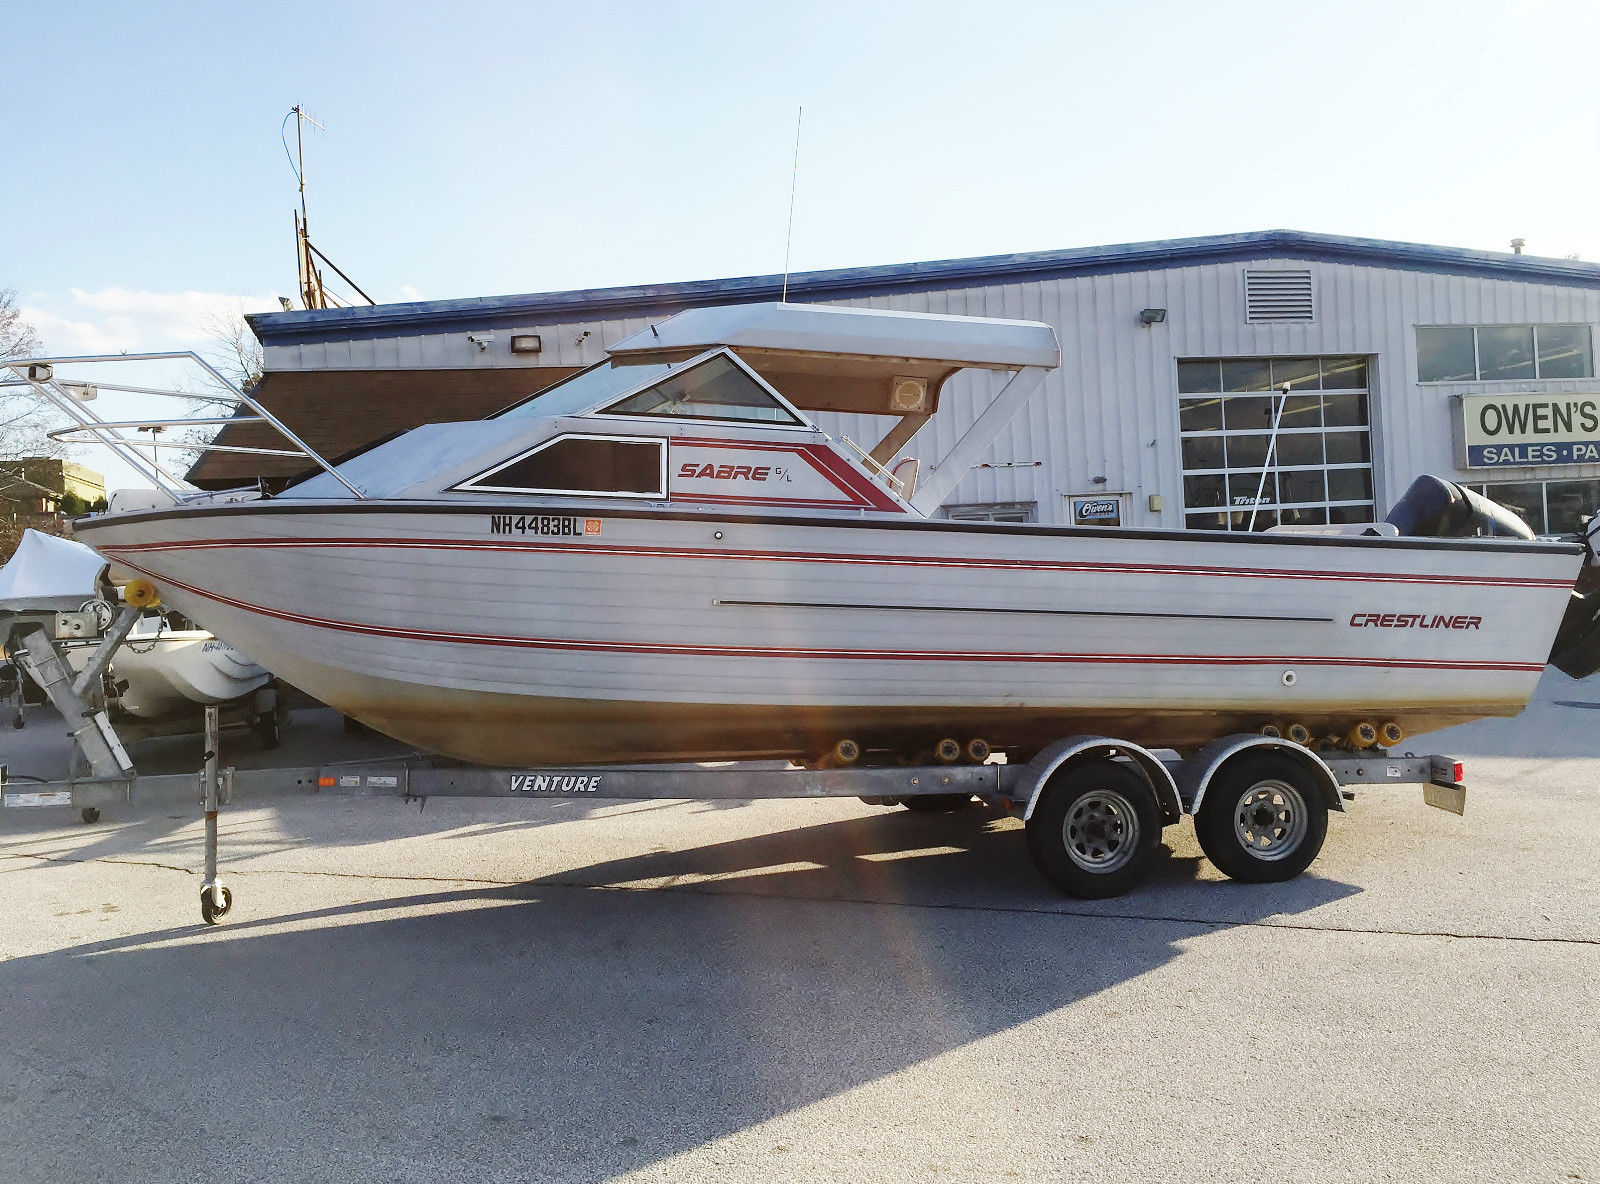 Crestliner Sabre GL 1989 for sale for $13,500 - Boats-from ...